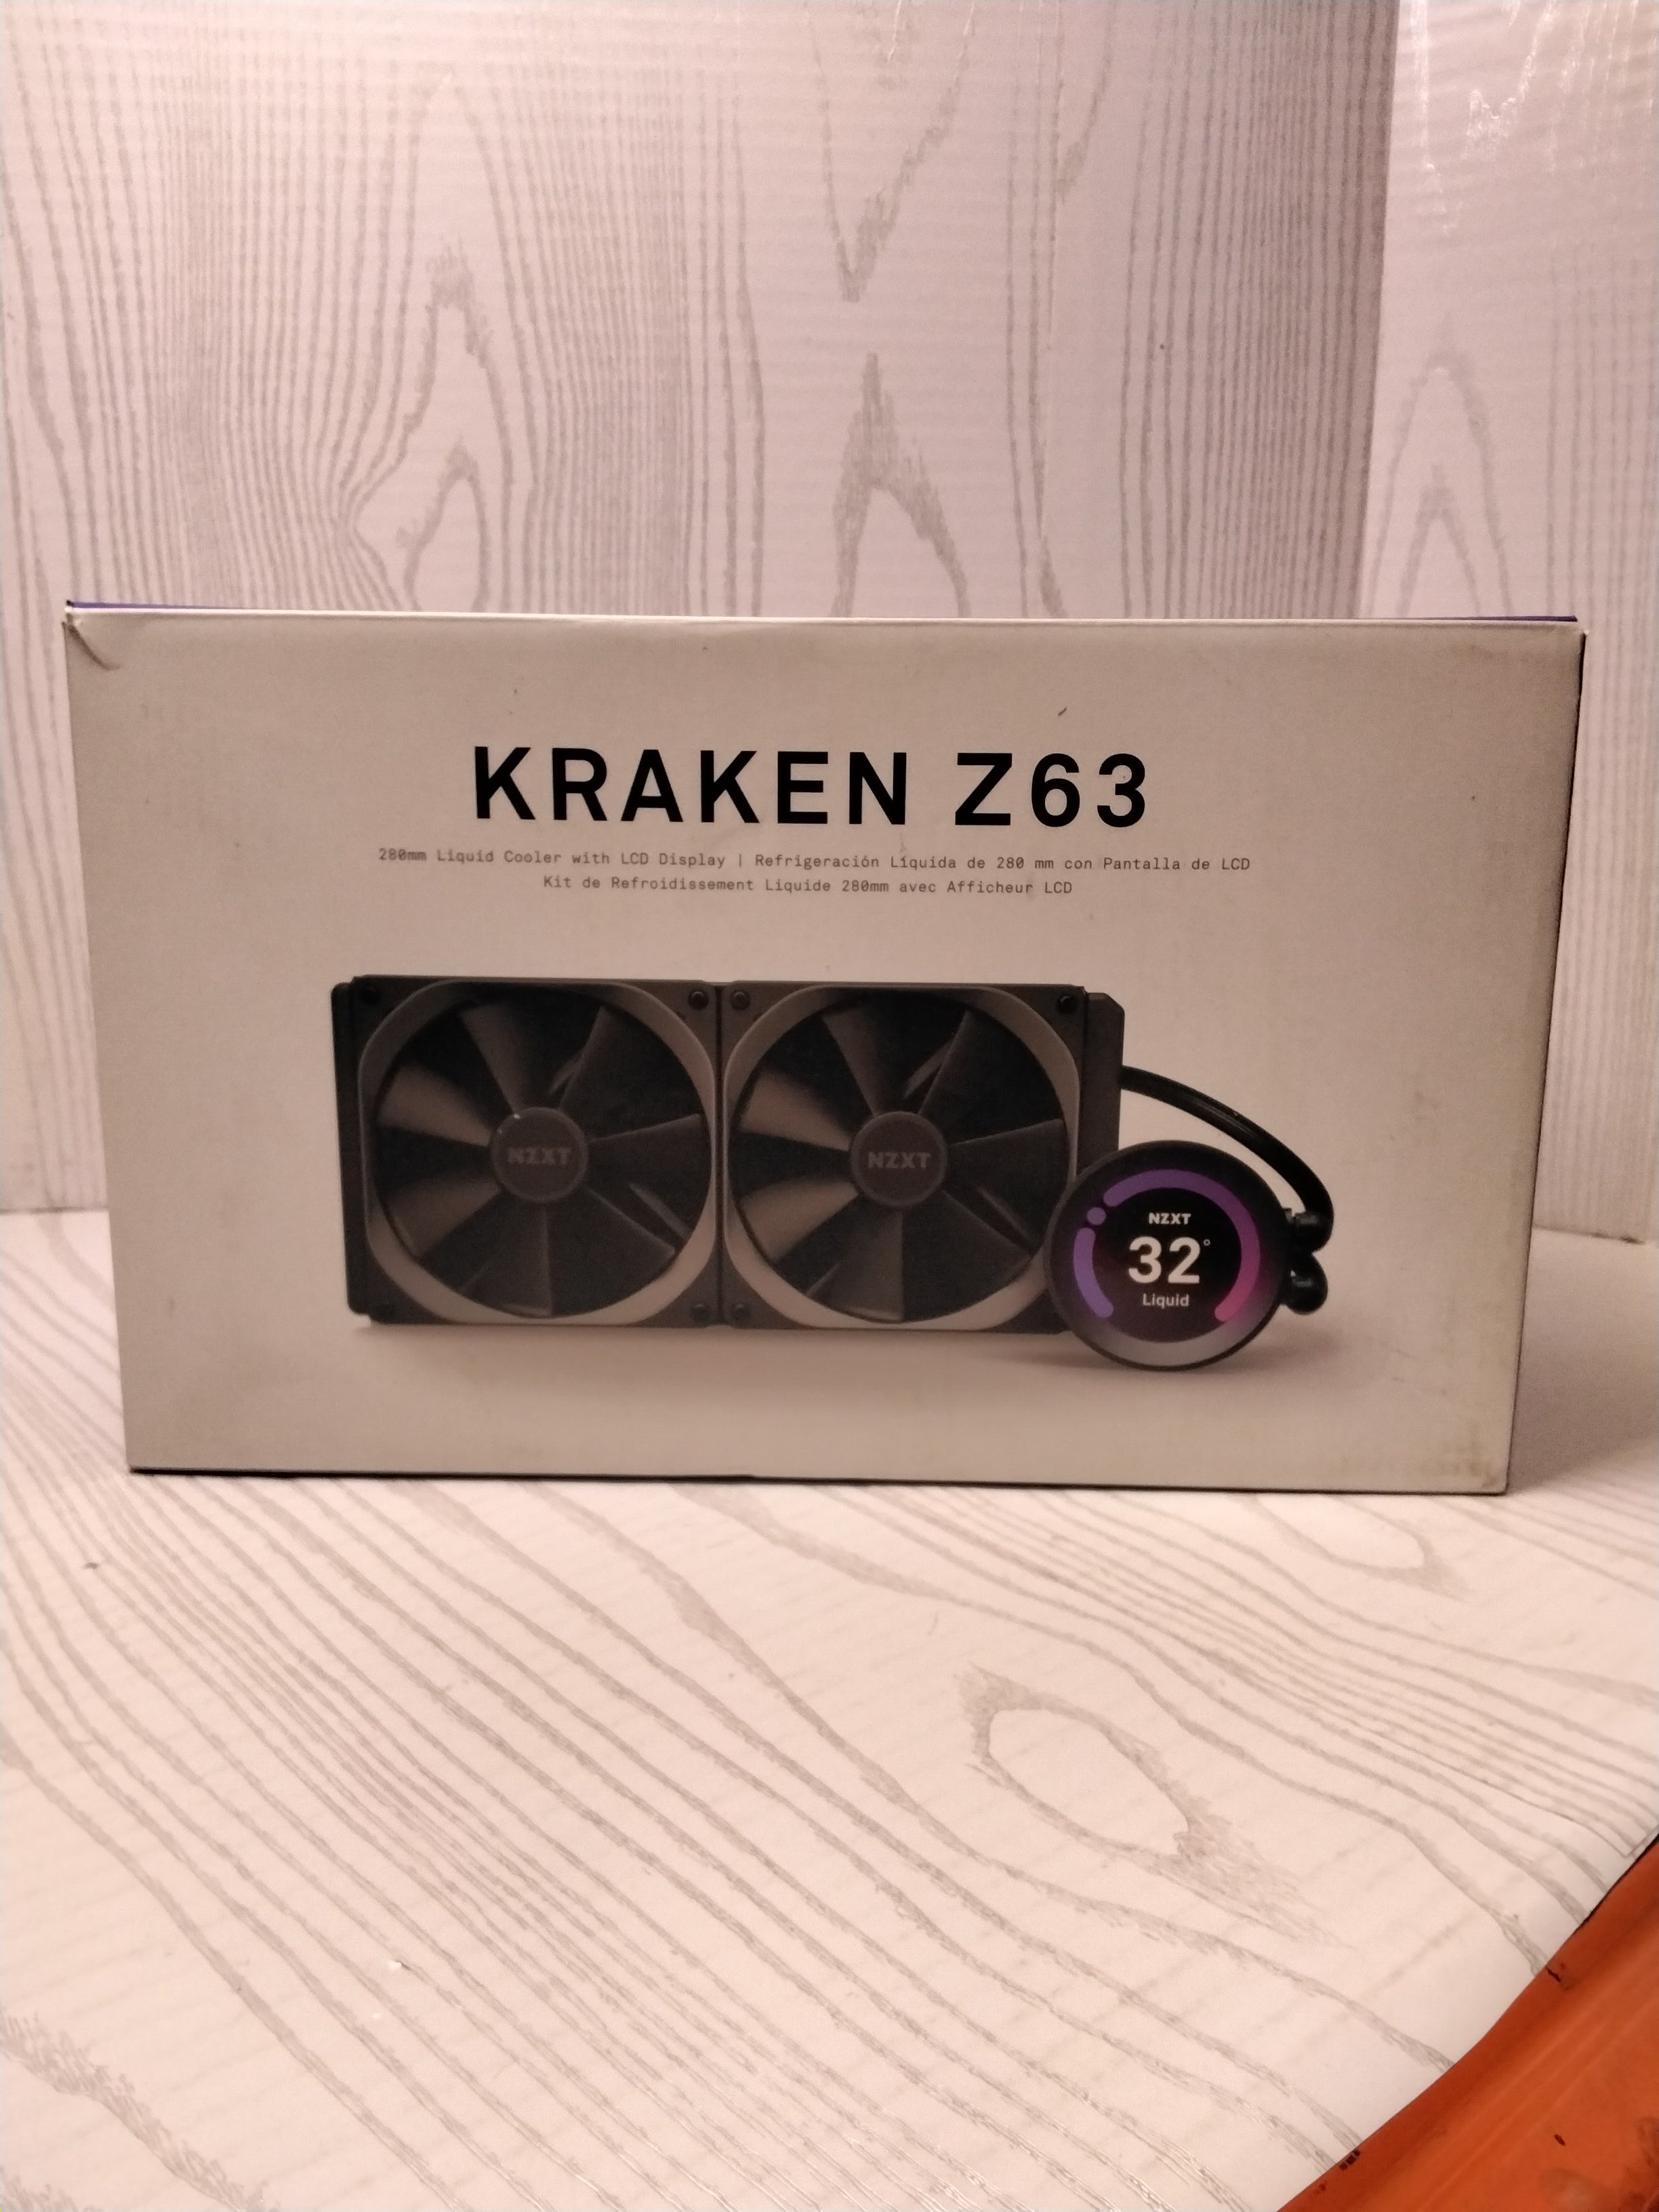 NZXT Kraken Z63 280mm - RL-KRZ63-01 - AIO RGB CPU Liquid Cooler (7777711653102)